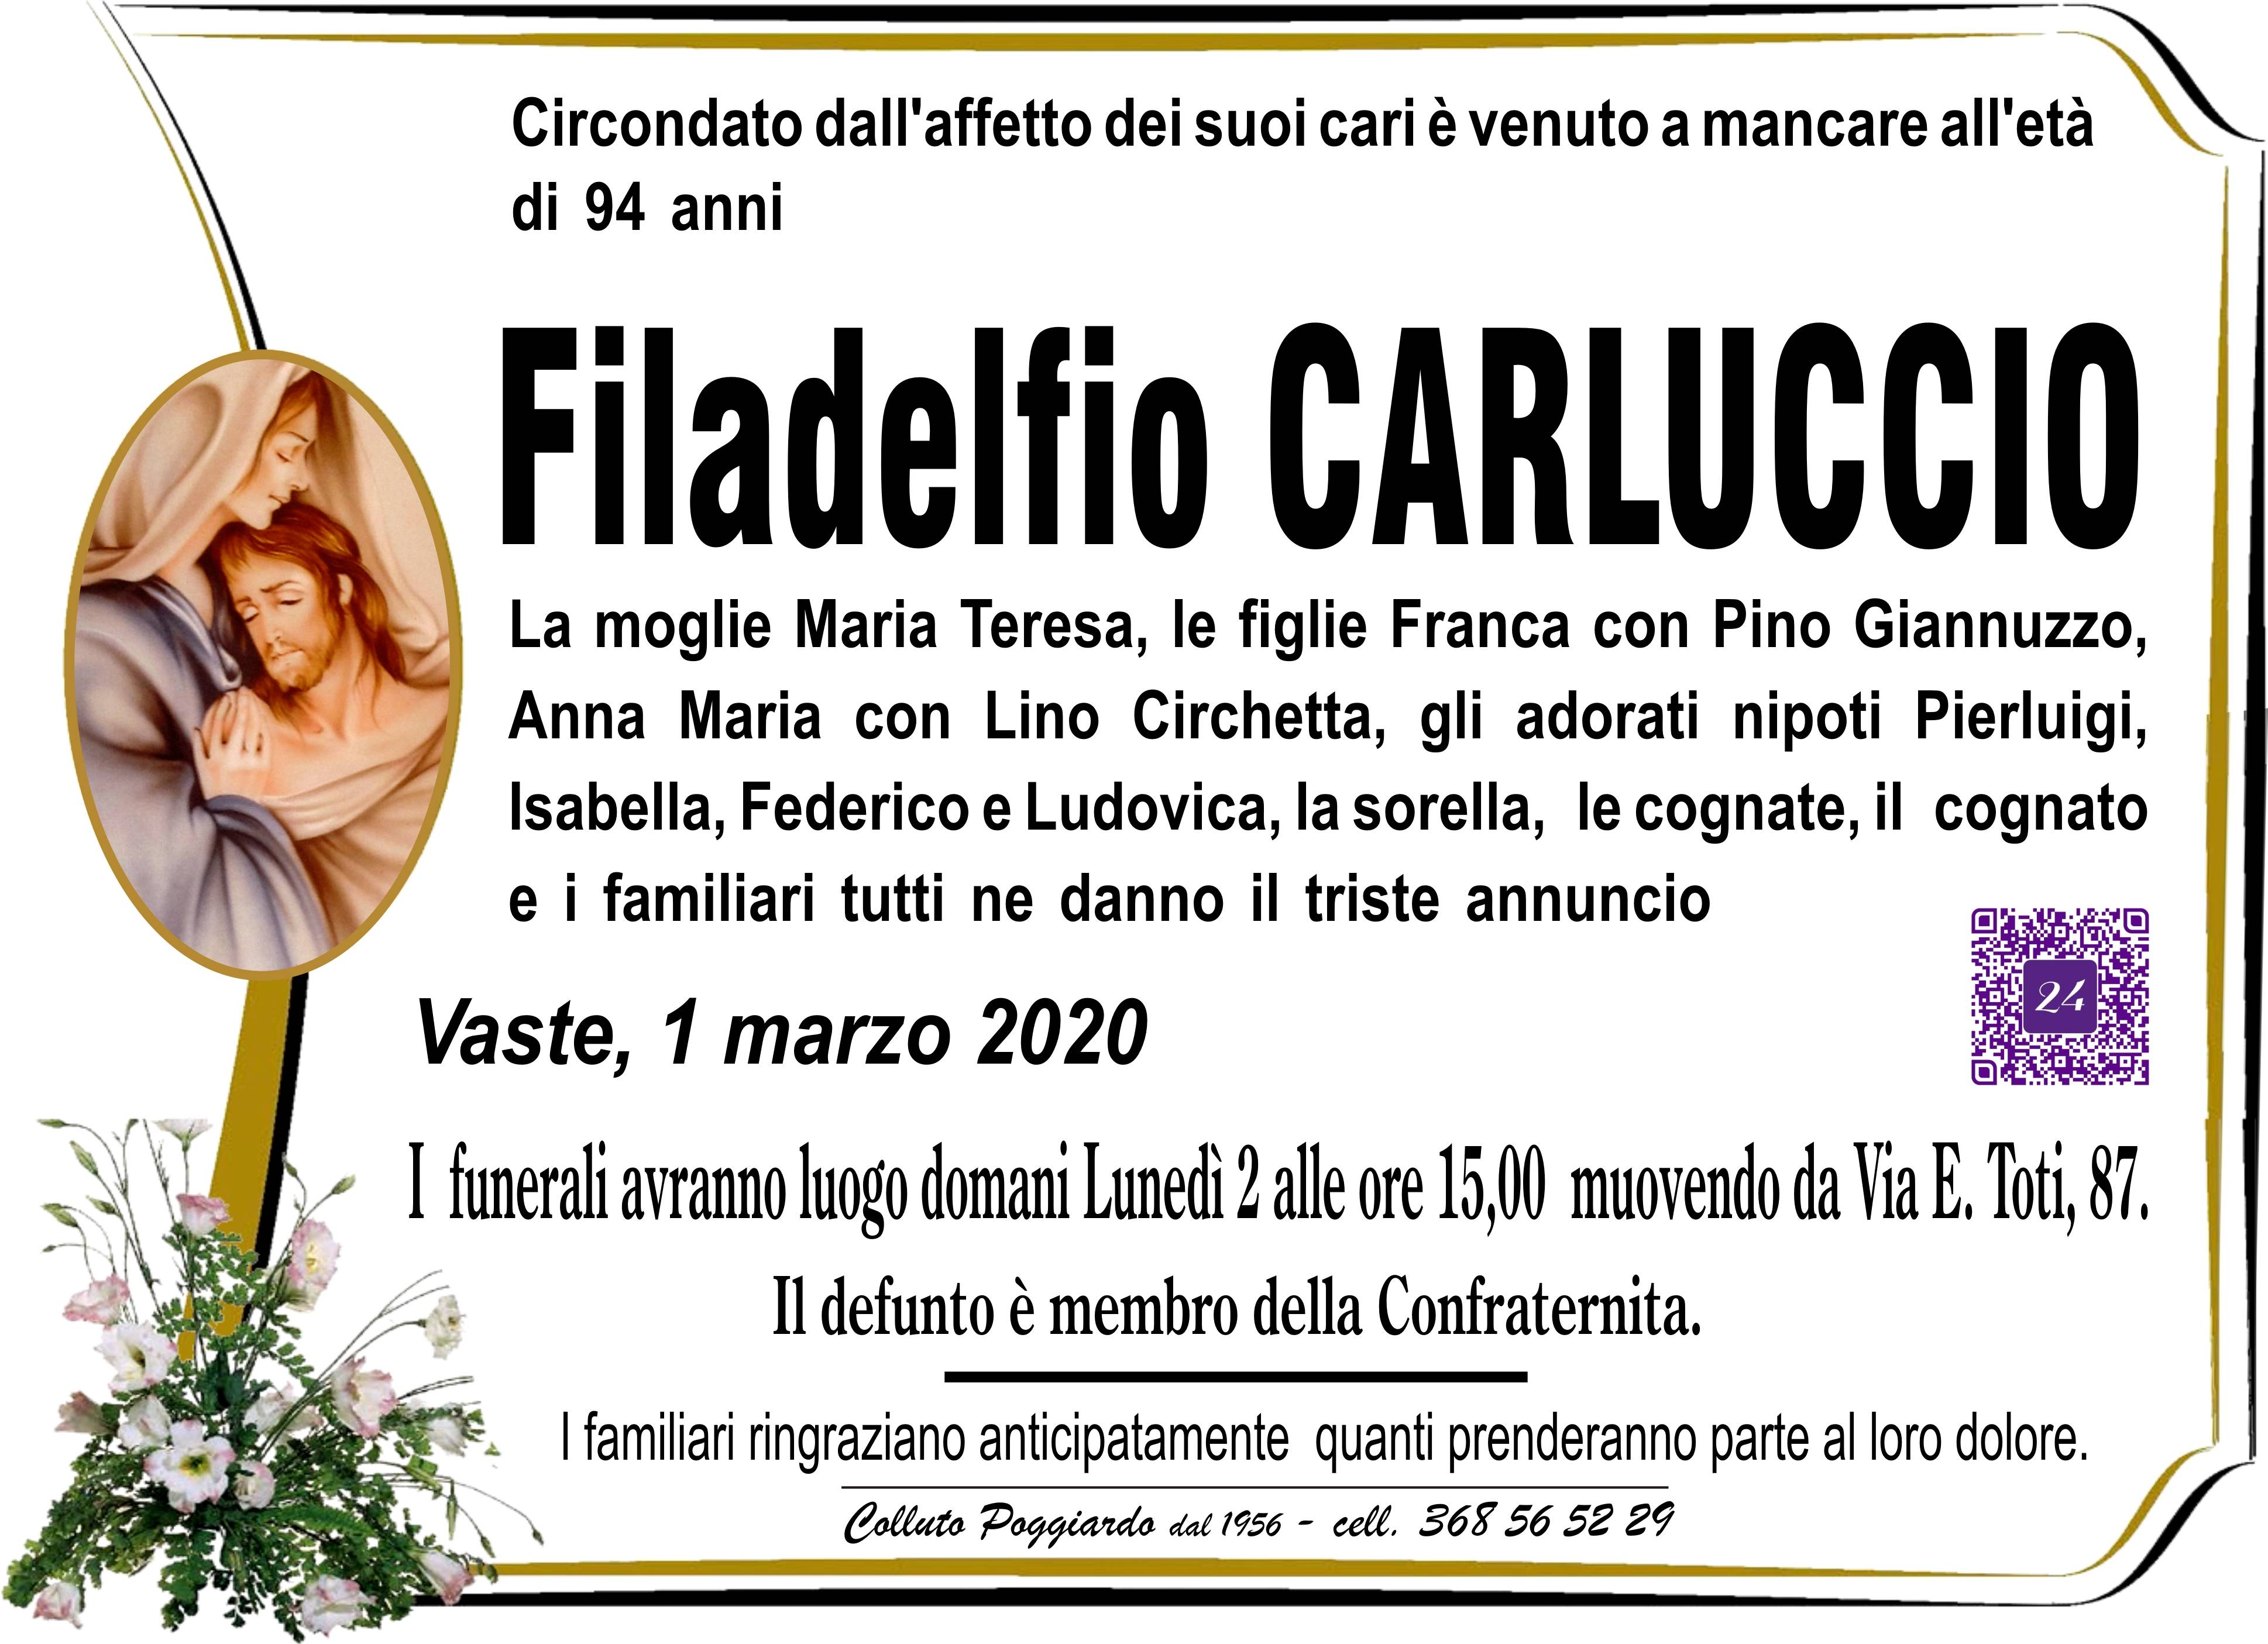 Filadelfio Carluccio